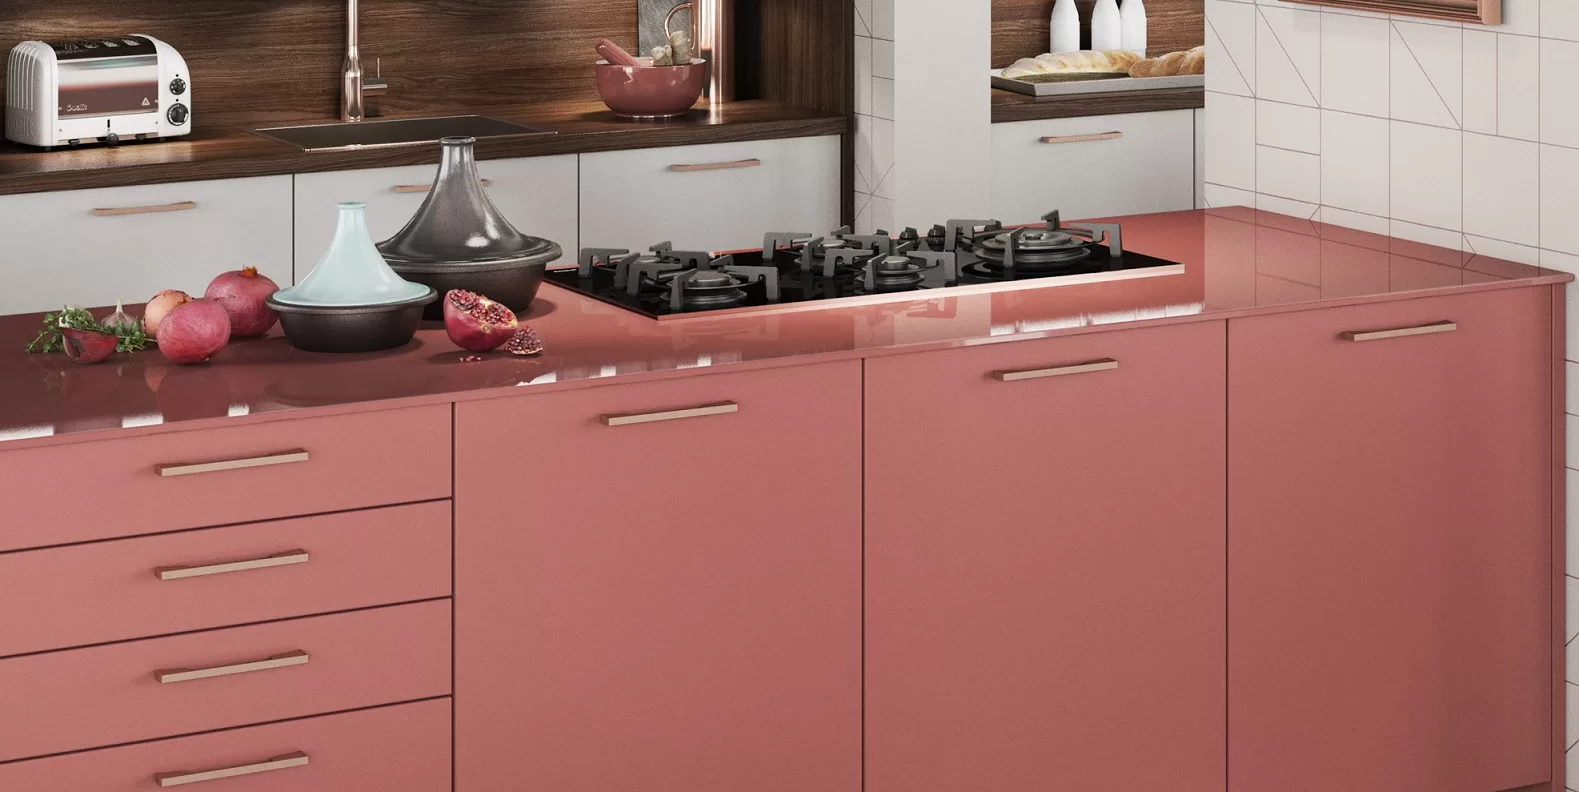 Cocina moderna rosa salmón con tiradores de latón y encimera de cristal rosa